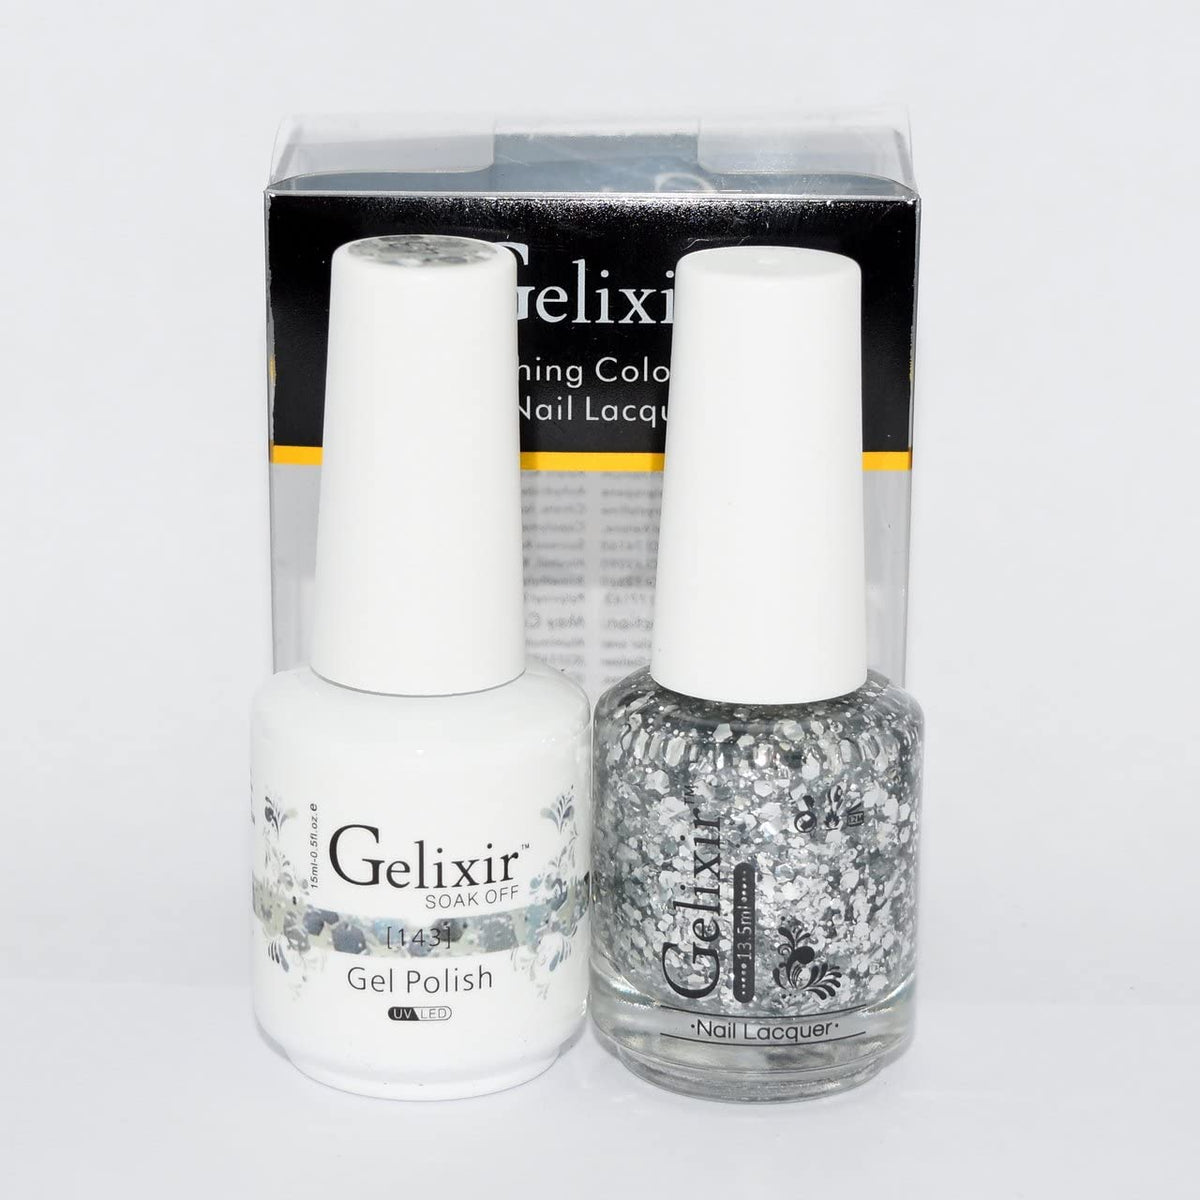 Gelixir 143- Gelixir Gel Polish & Matching Nail Lacquer Duo Set - 0.5oz